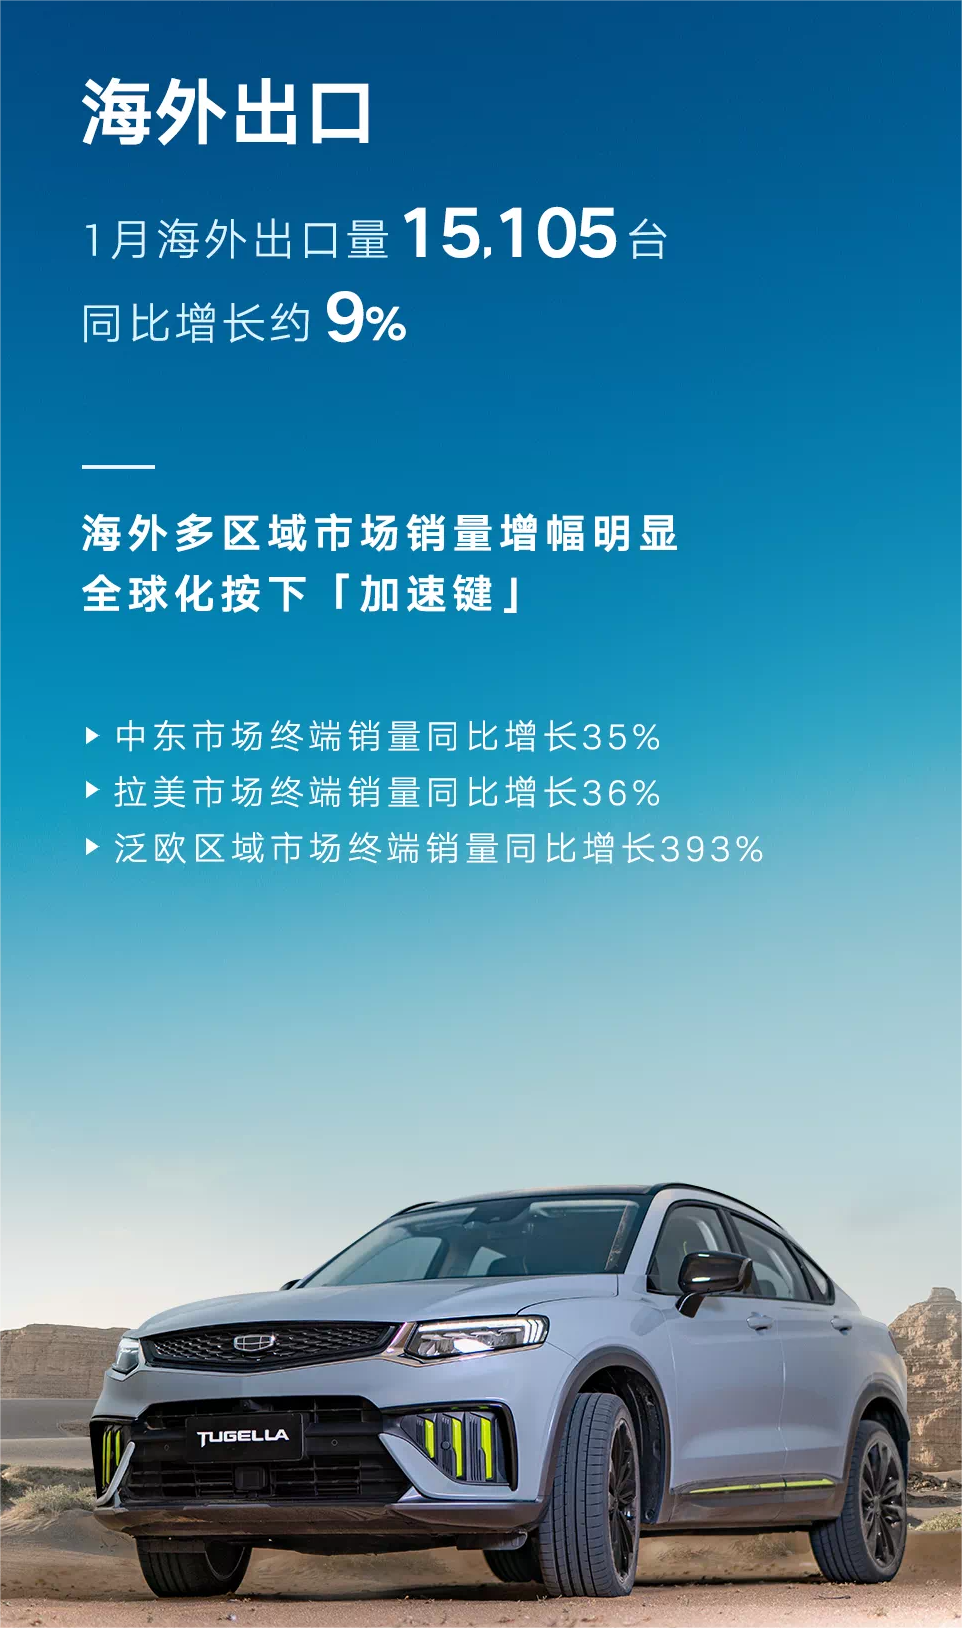 吉利汽车1月总销量同比减少约29% 海外市场增幅明显